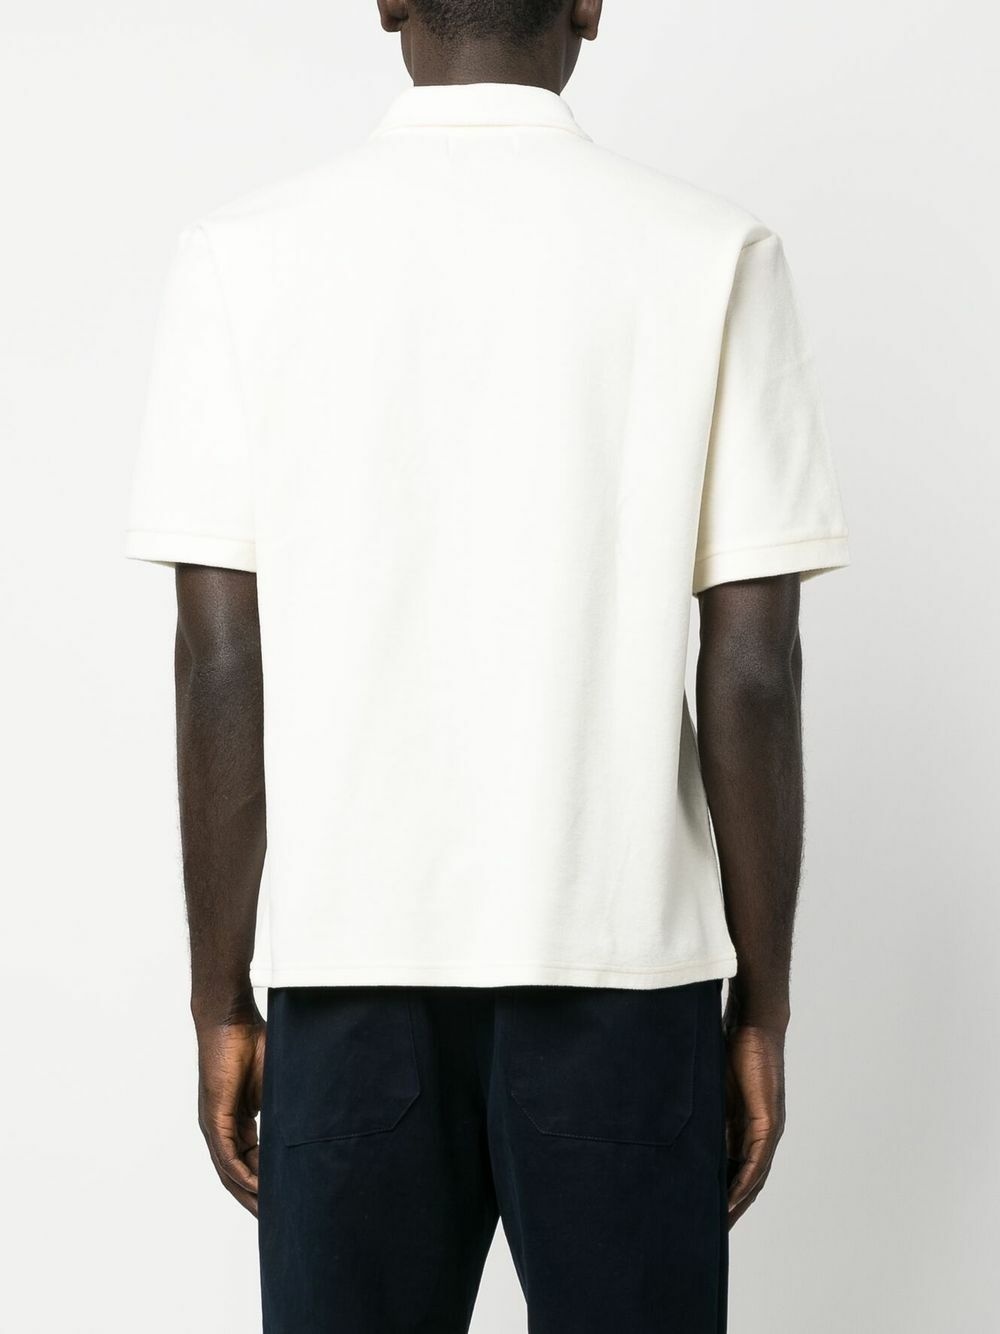 PALMES - Organic Cotton Pique Short Sleeve Polo Shirt